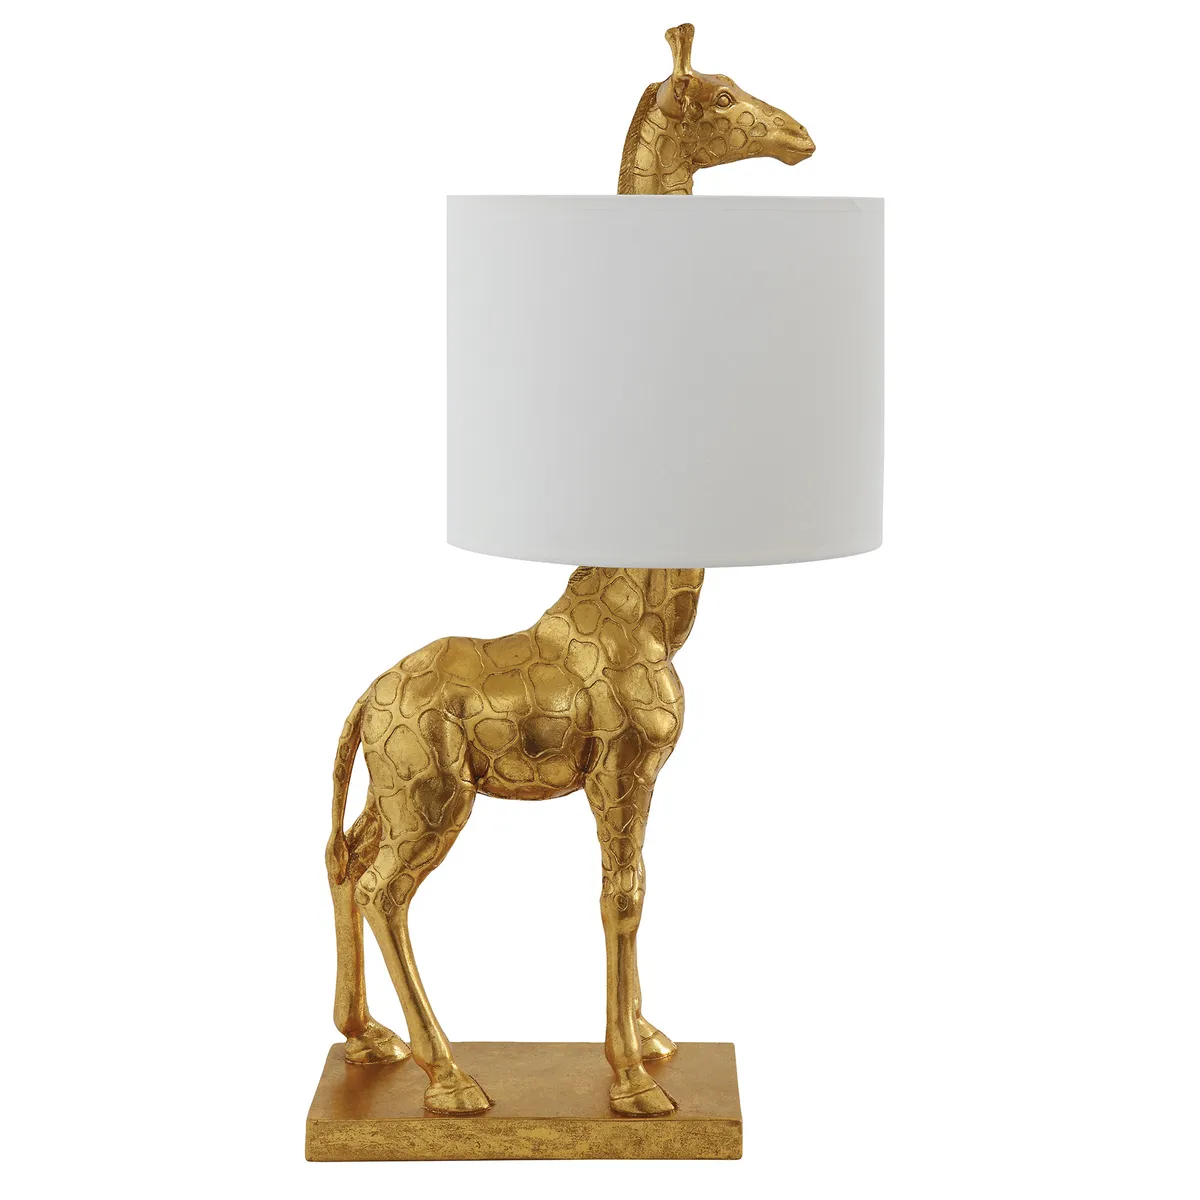 Gold giraffe table lamp, £128, Audenza